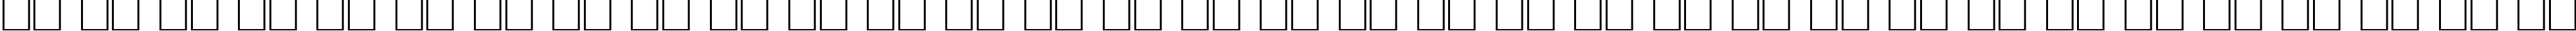 Пример написания русского алфавита шрифтом KudrashovCTT Italic